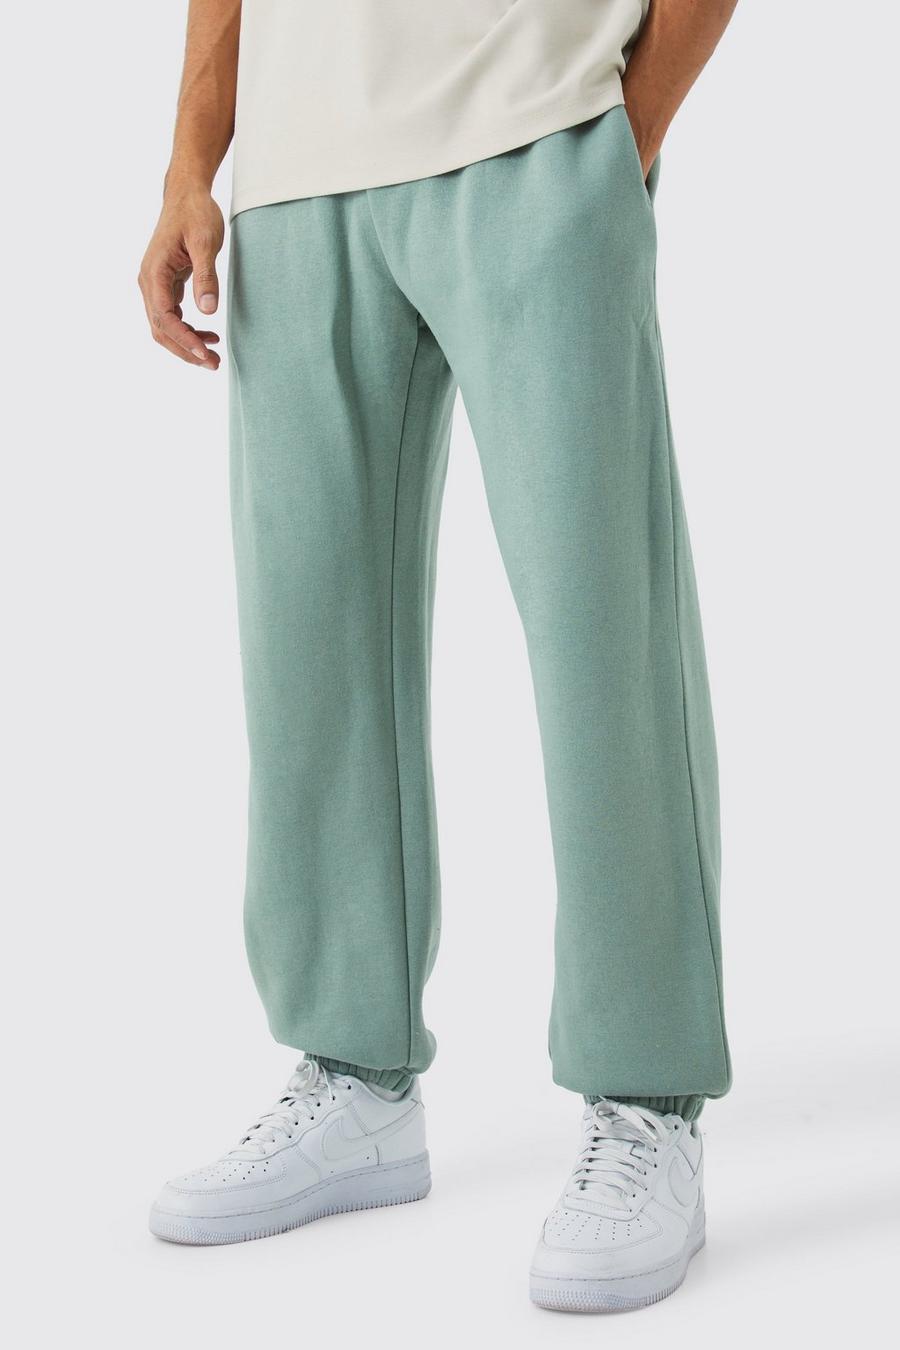 Pantaloni tuta oversize Basic, Sage image number 1